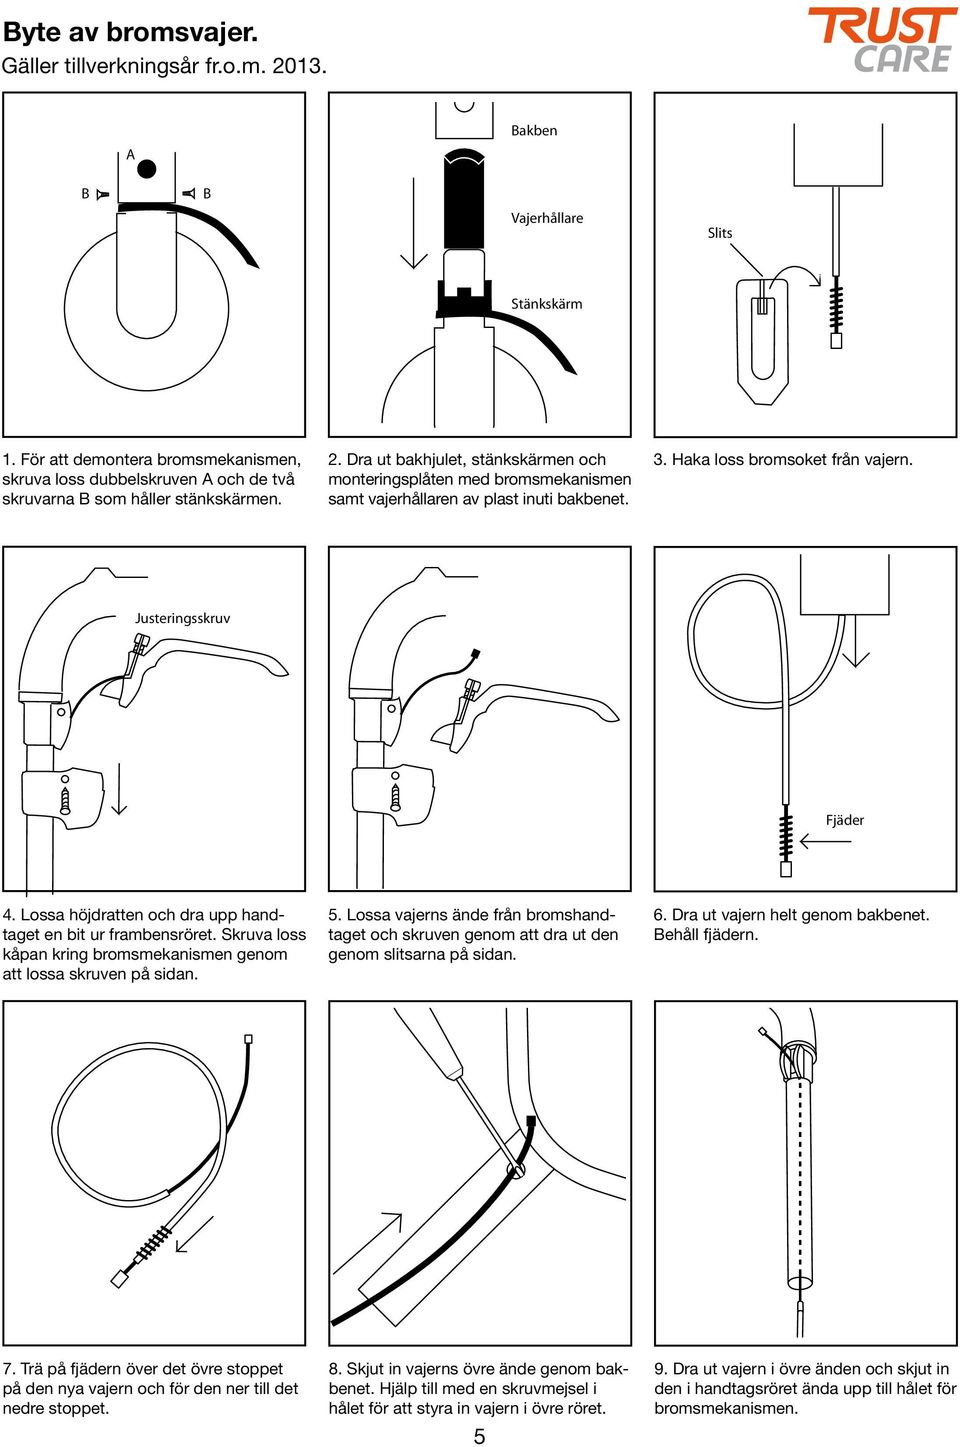 För att demontera bromsmekanismen, skruva loss dubbelskruven och de två skruvarna som håller stänkskärmen. 2.